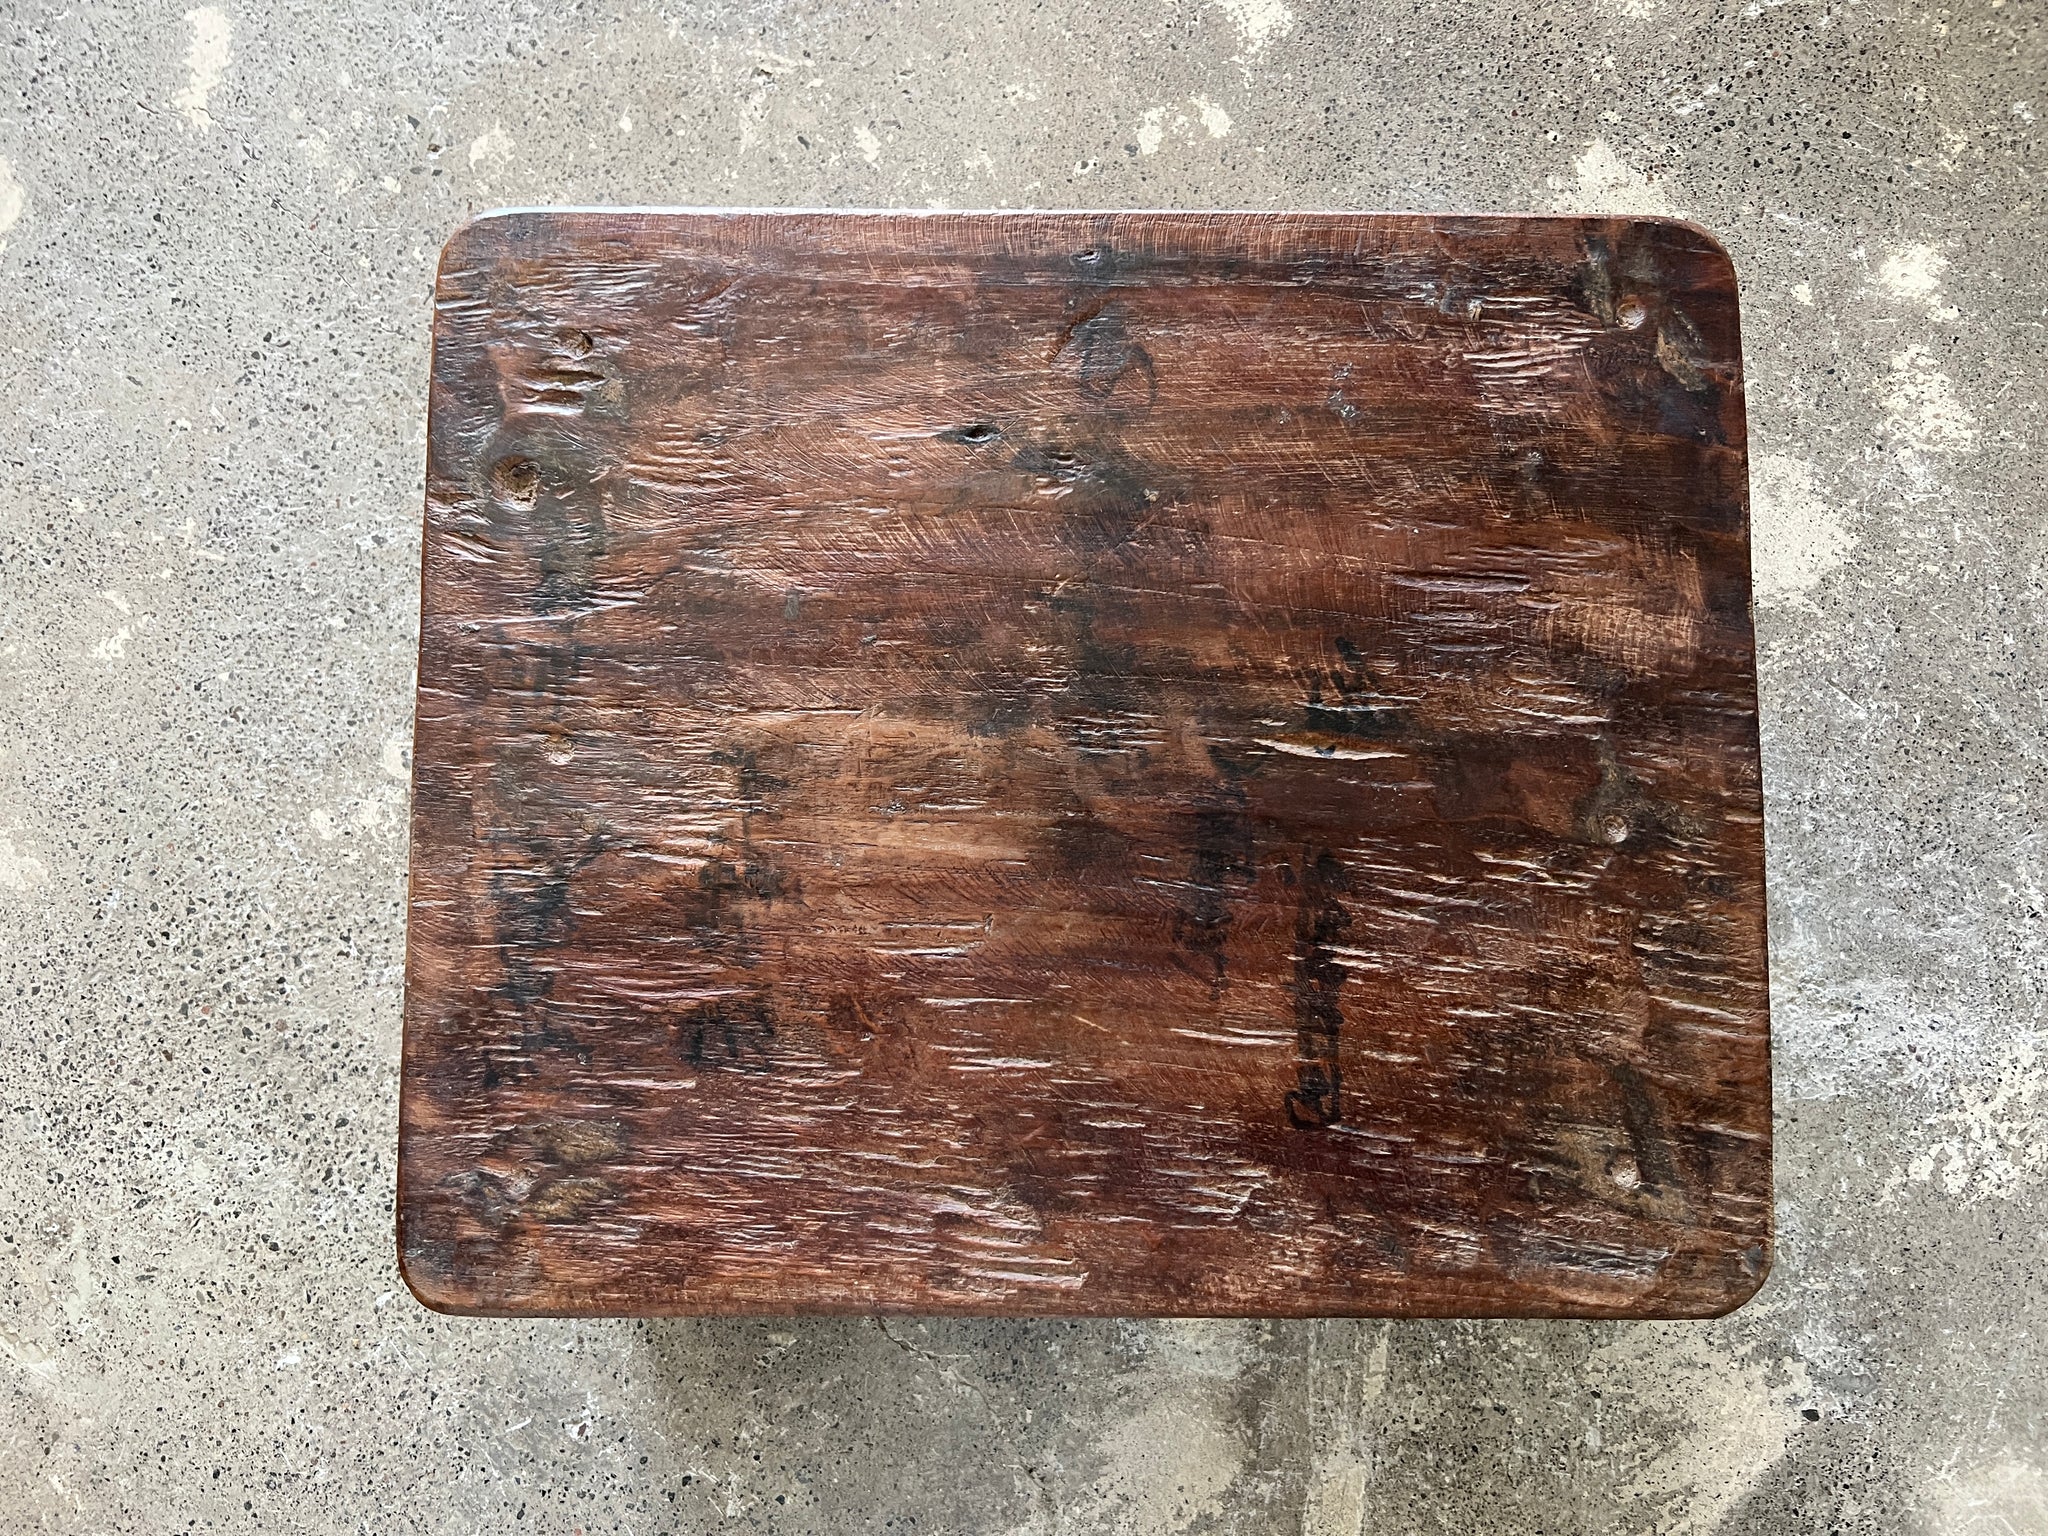 Petite table basse en bois recyclée rectangulaire basse en teck upcyclé